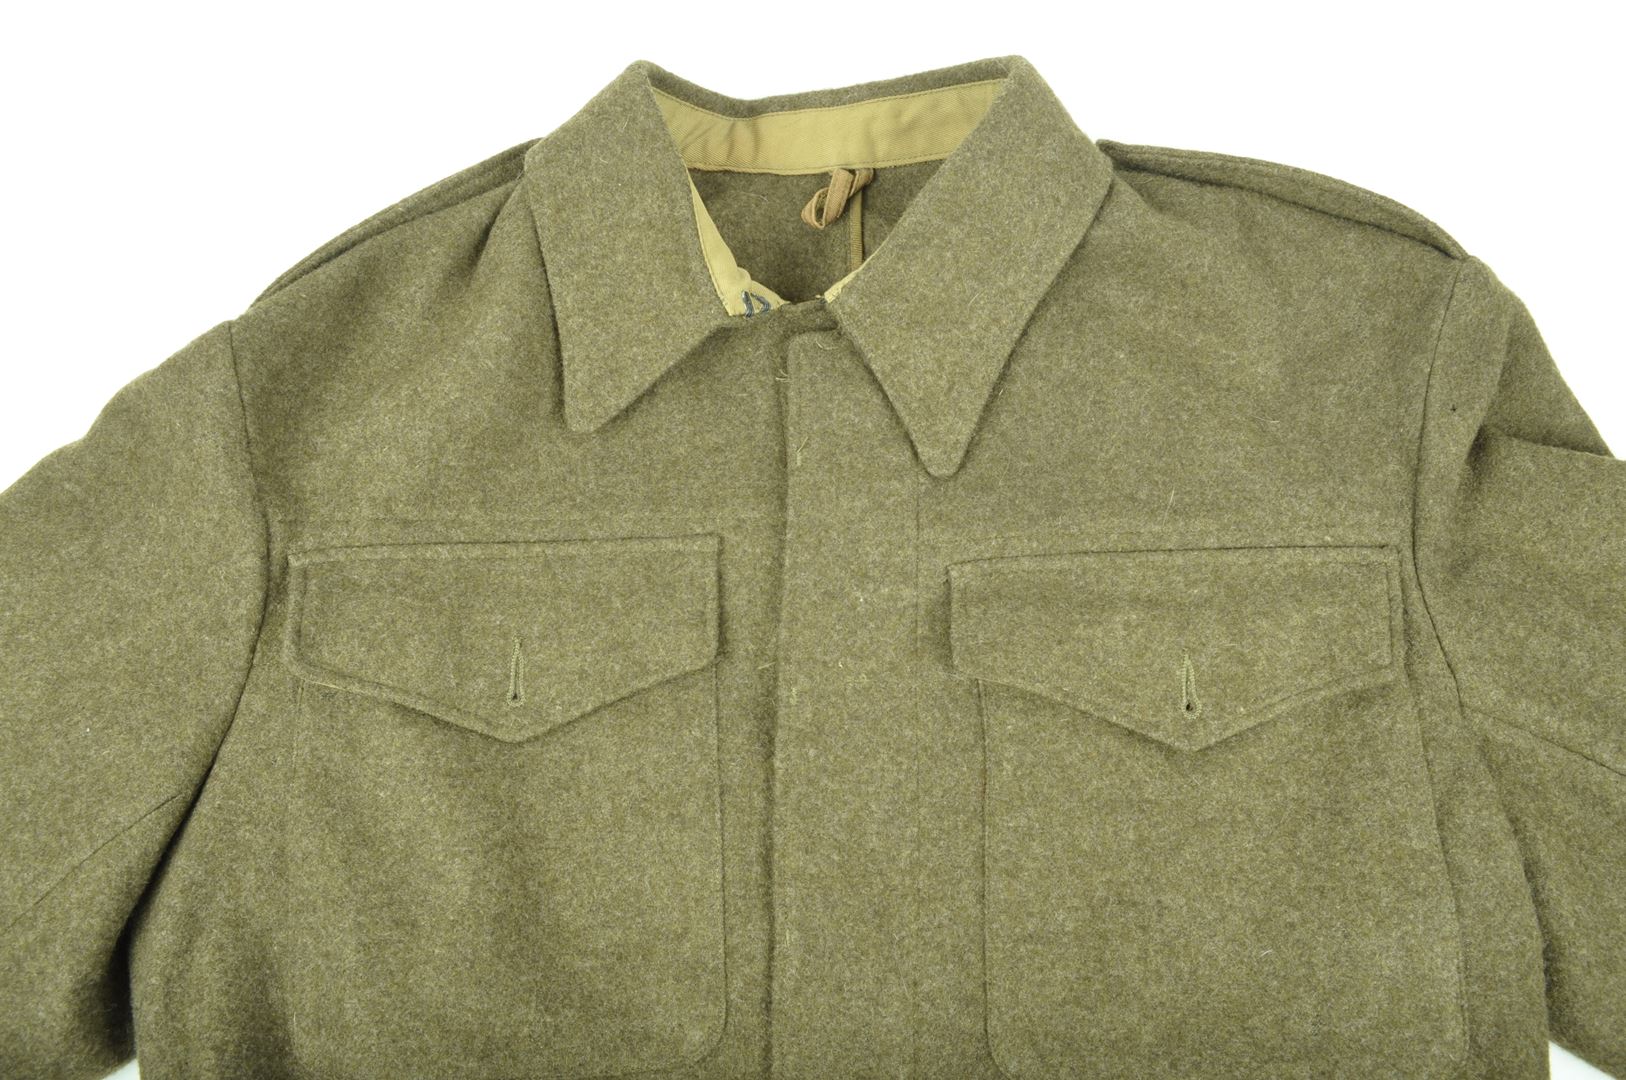 Blouson Battle Dress "American Made War Aid" / daté 1943